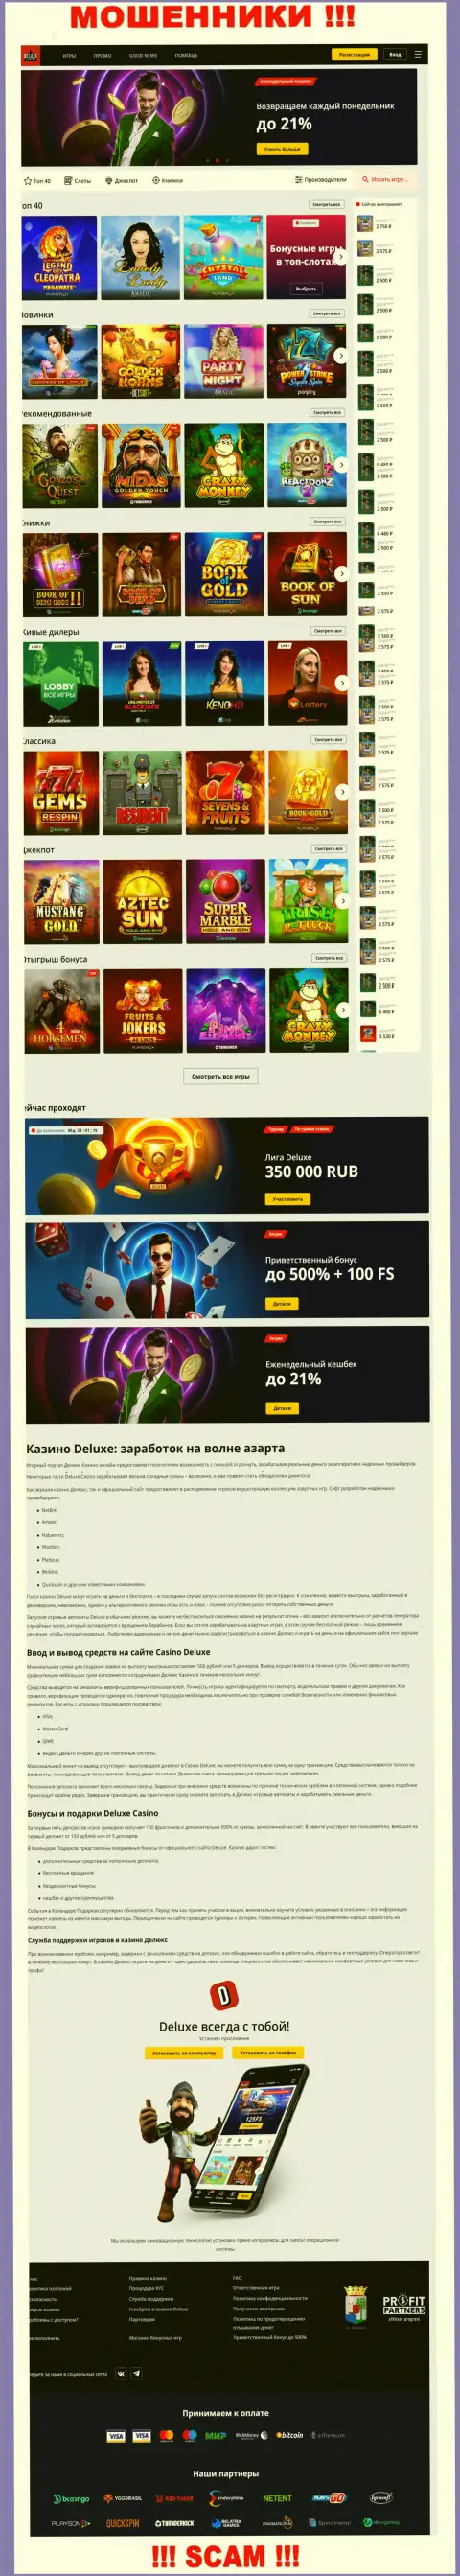 Официальная интернет-конторы Deluxe Casino